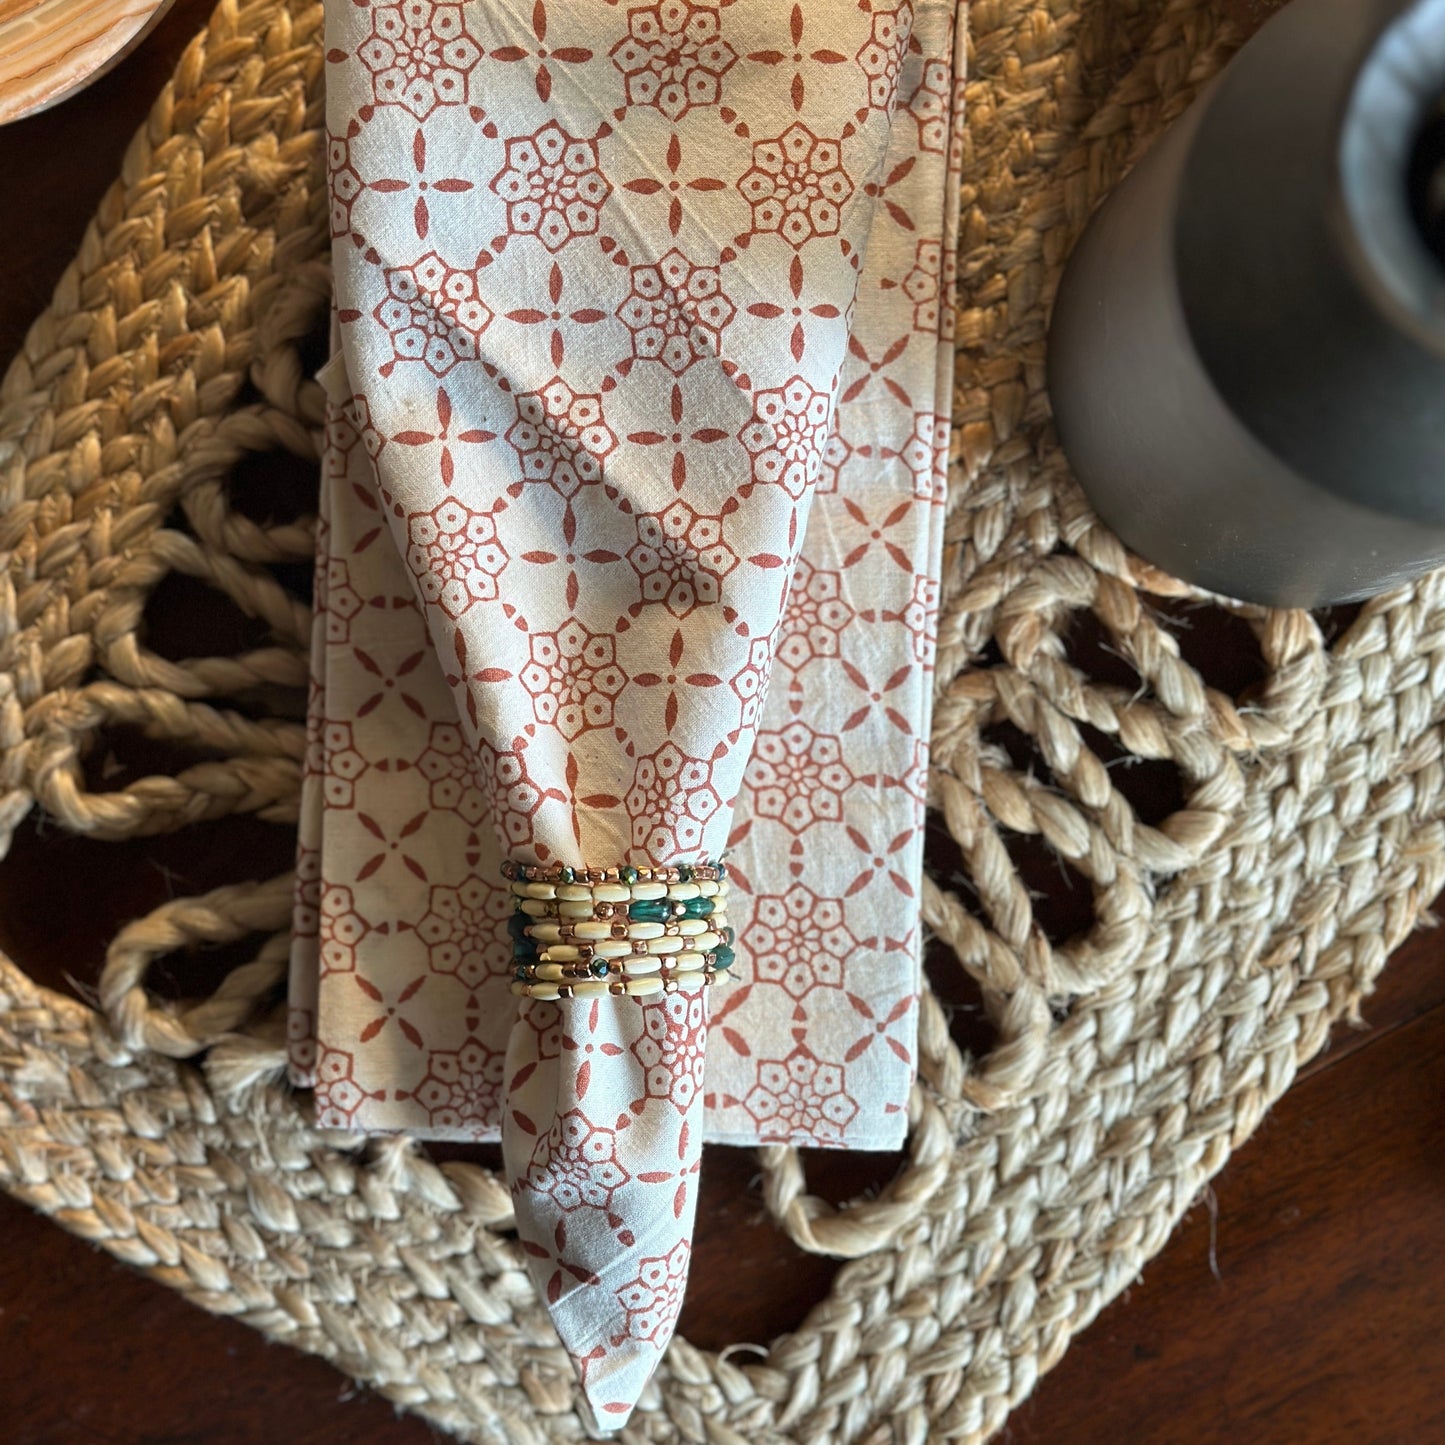 Handmade Cloth Napkins